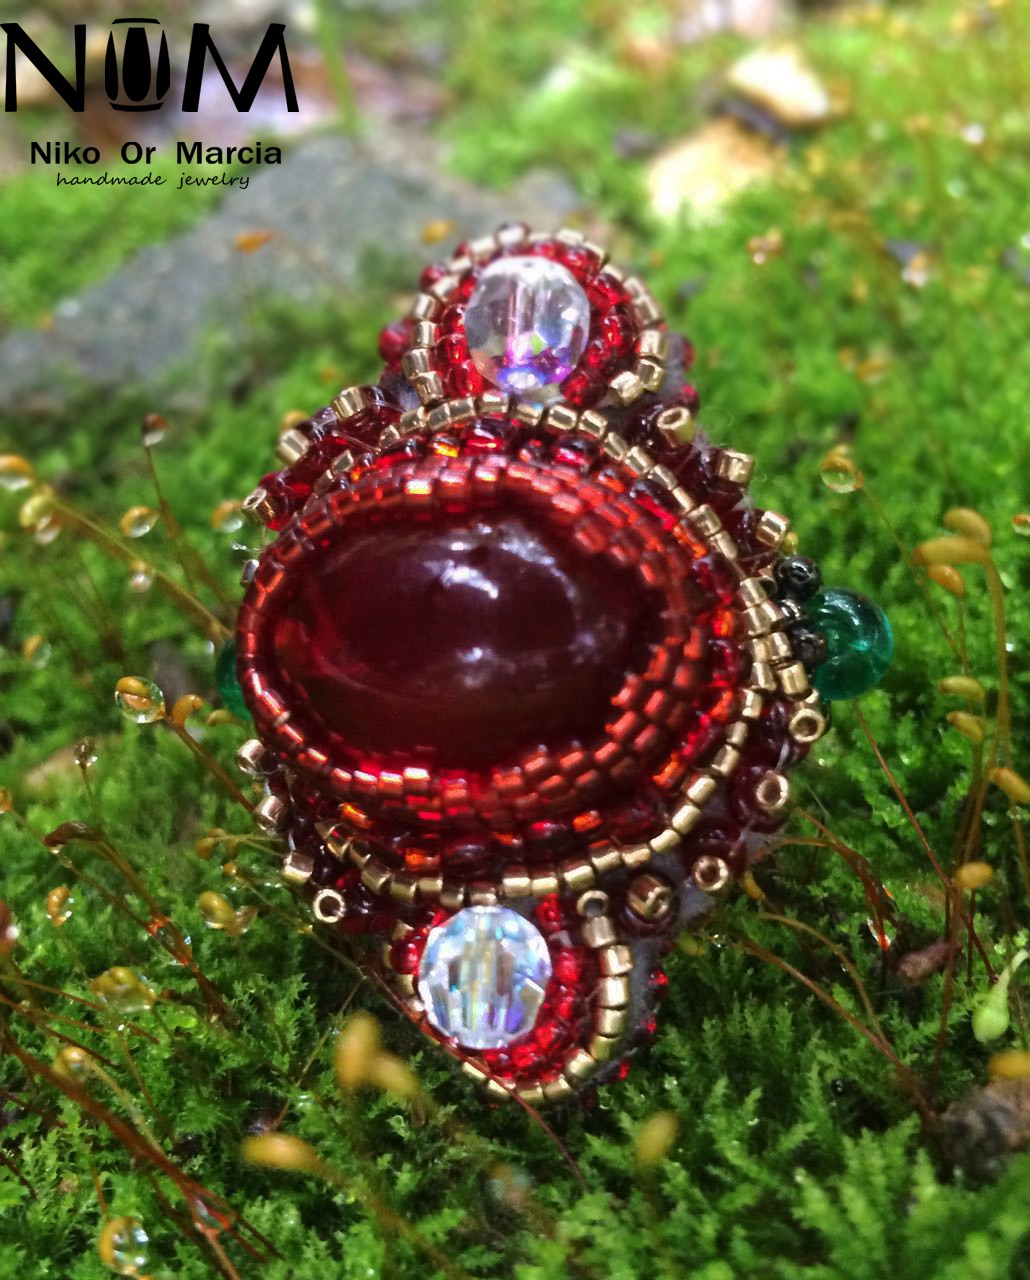 红色宝石缝珠戒指。用缝珠的工艺制作的戒指。技法不复杂，只要有耐心即可。